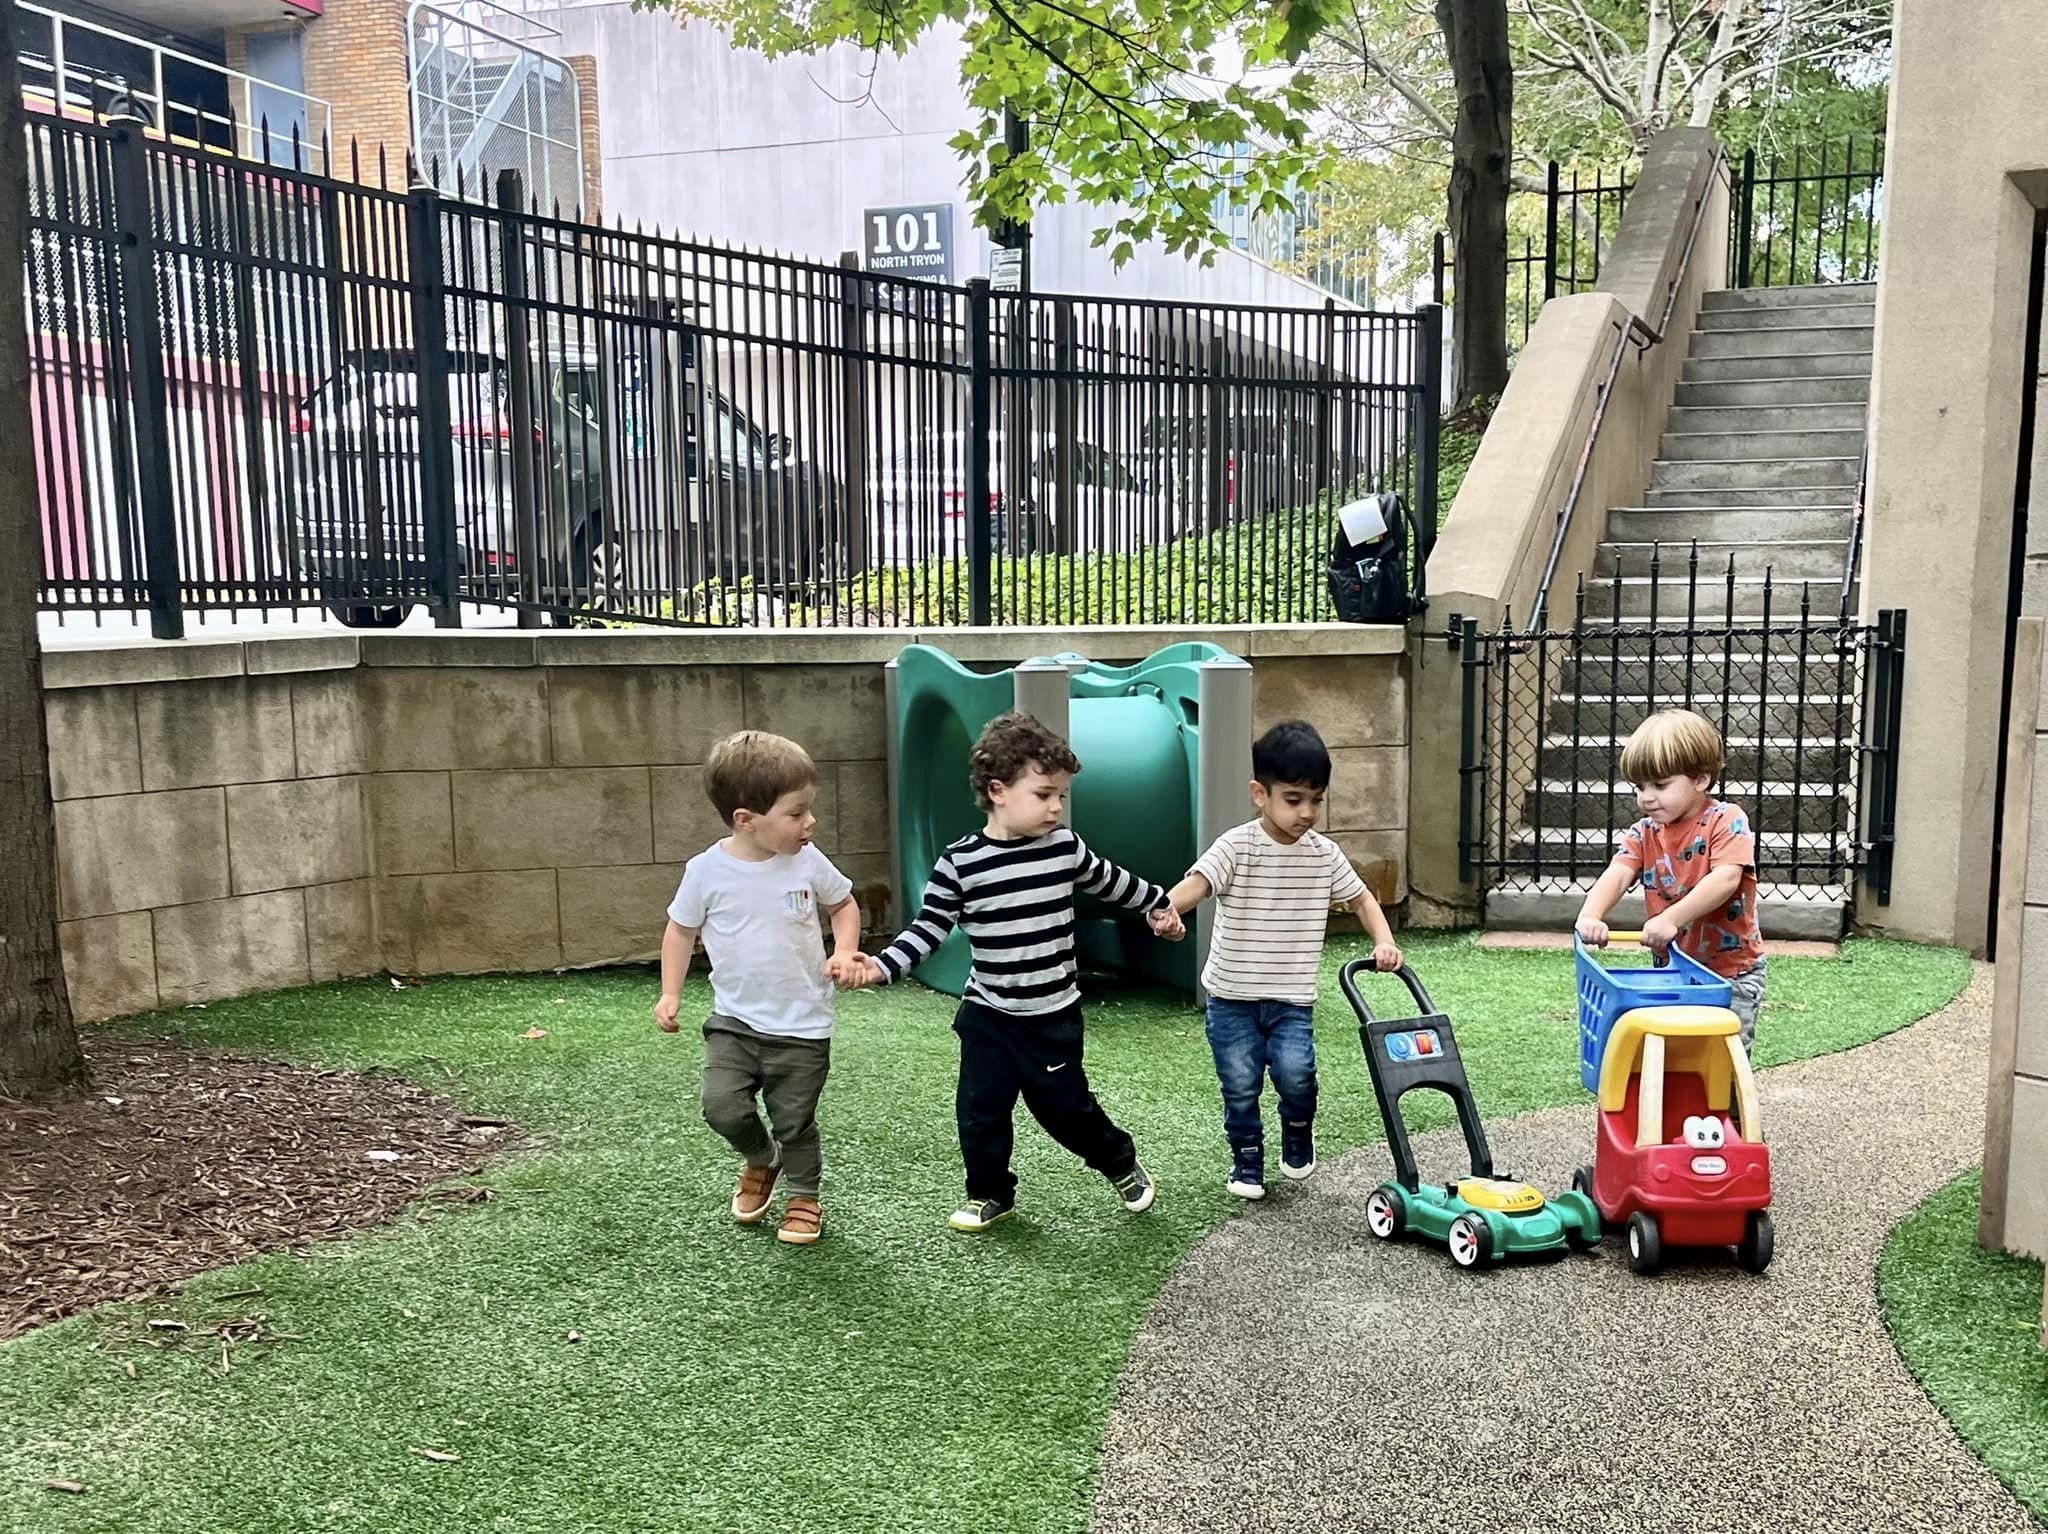 Playground friendship